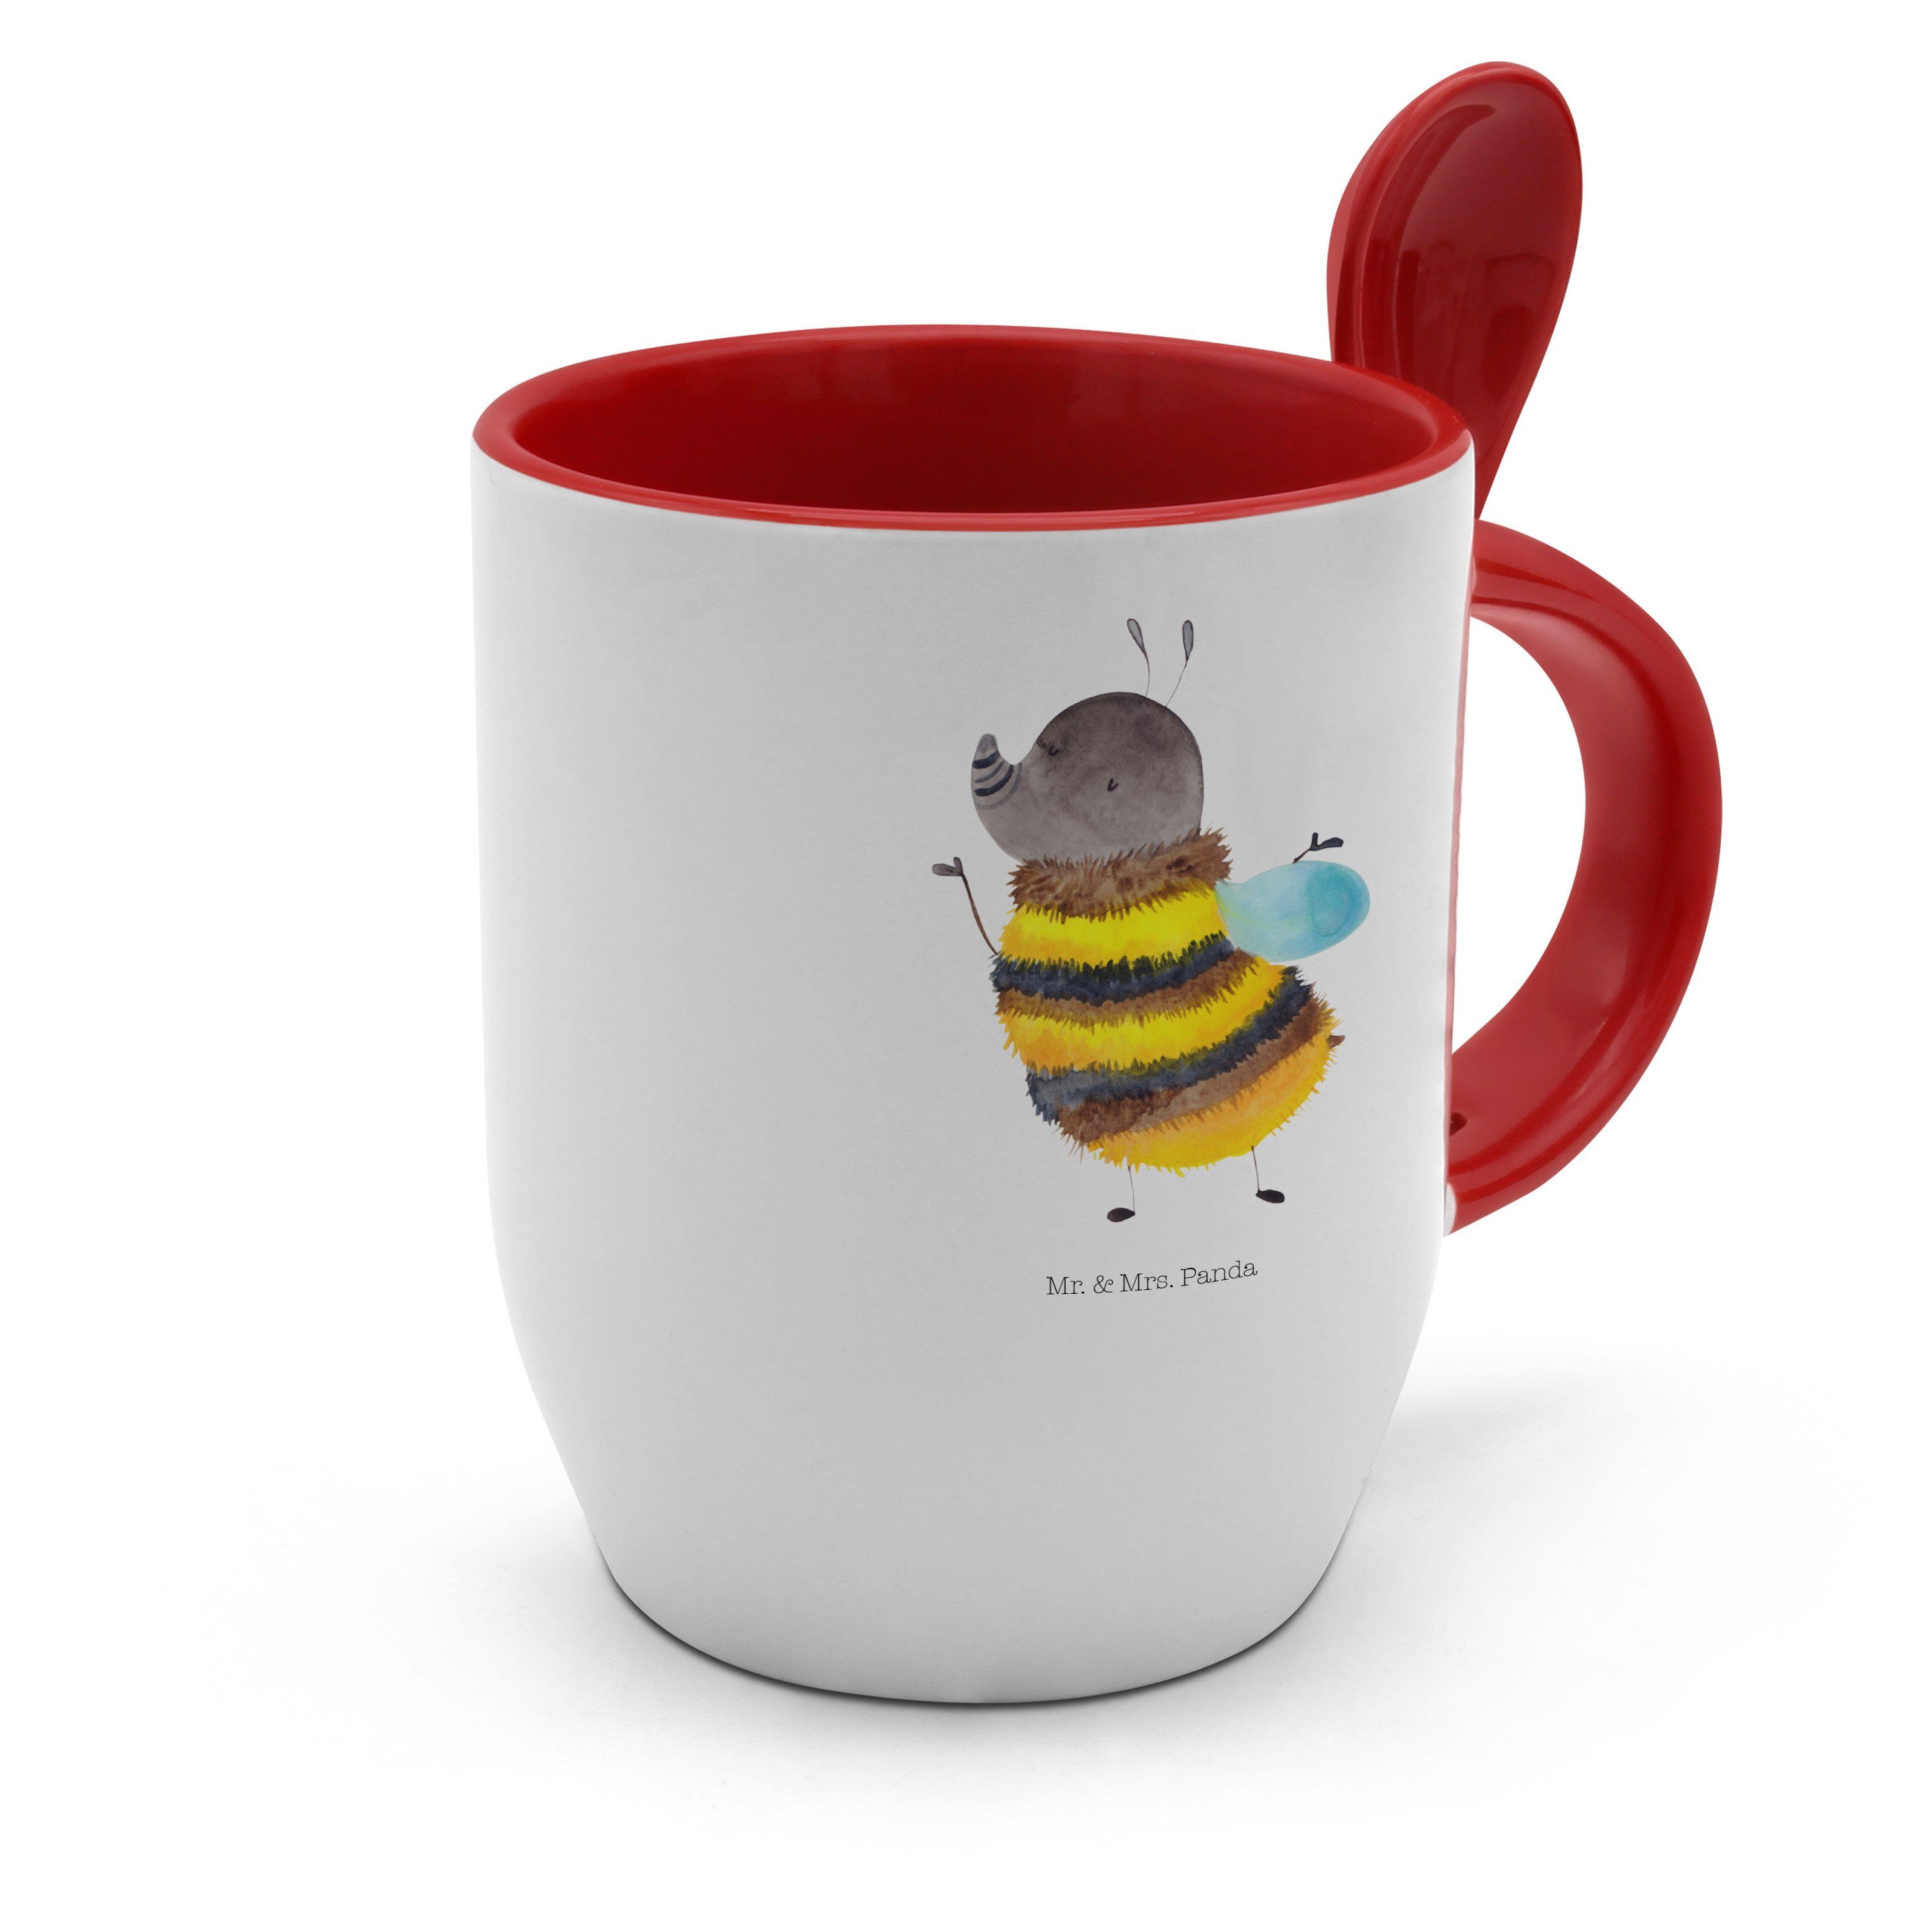 Mr. & Mrs. Panda flauschig - Biene, Keramik Weiß - Kaffeebecher, Tasse Hummel Geschenk, Tiermotive